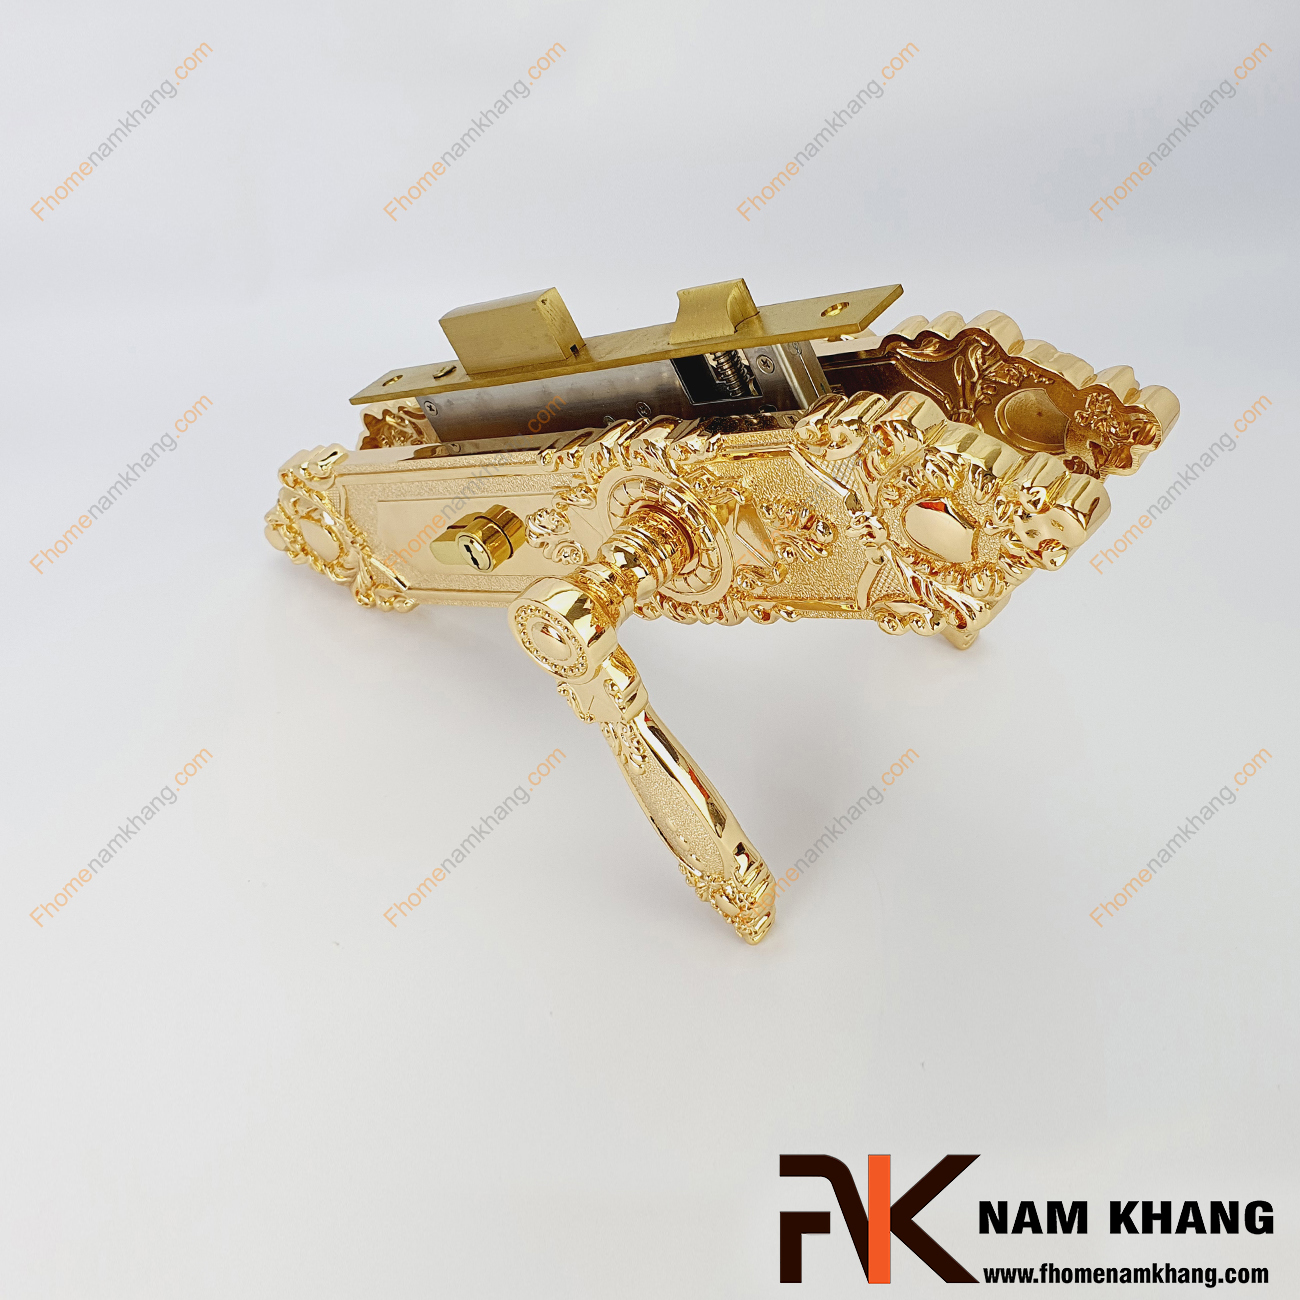 Khóa cửa chính cổ điển màu đồng vàng NK186L-24K là bộ sản phẩm khóa loại lớn chuyên dùng cho các dạng cửa sảnh, cửa chính, cửa 2 cánh, 4 cánh,...